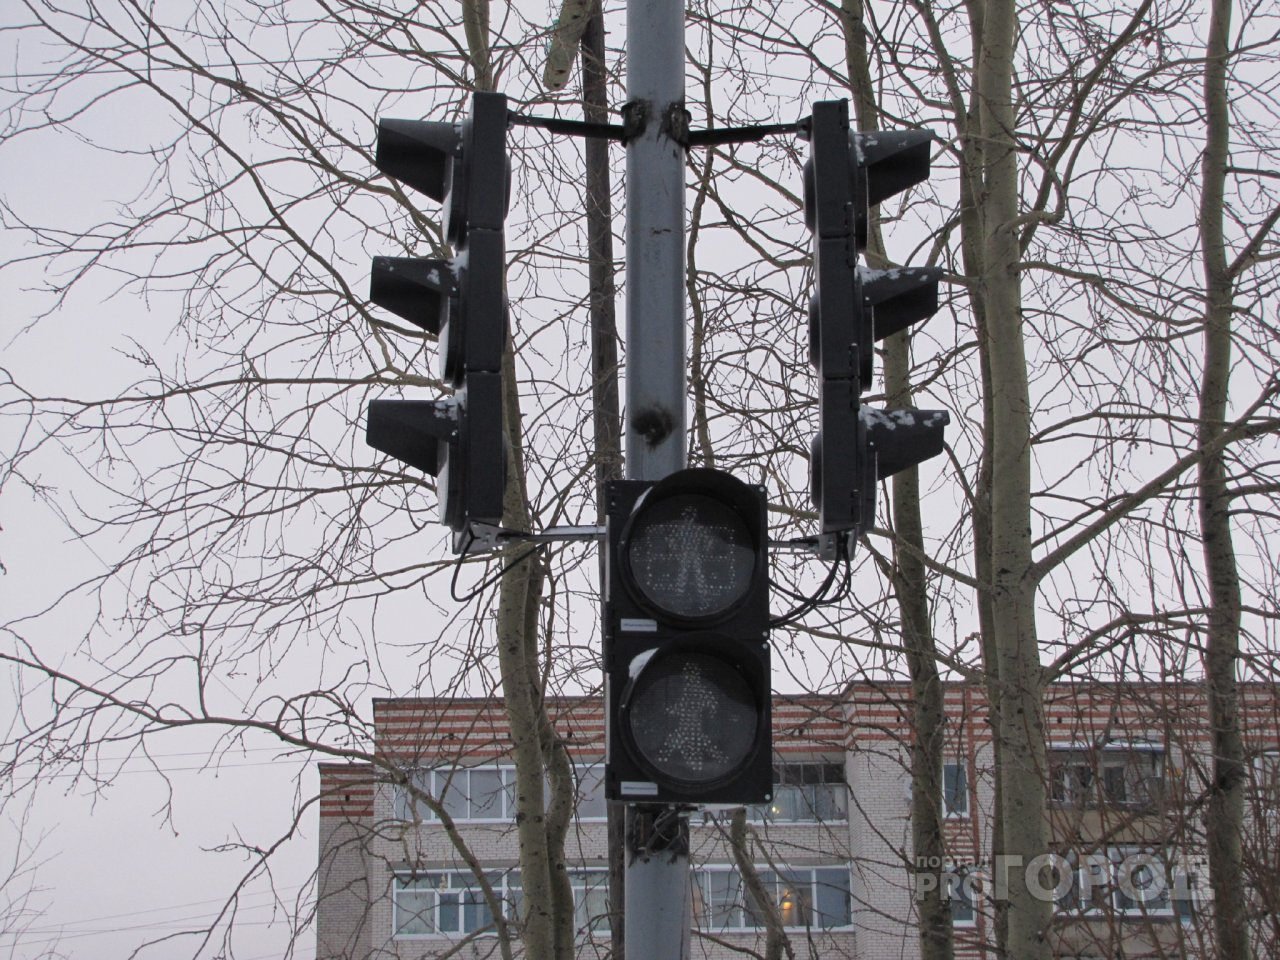 Мэрию заставили поставить светофор на загруженном перекрестке в Ярославле